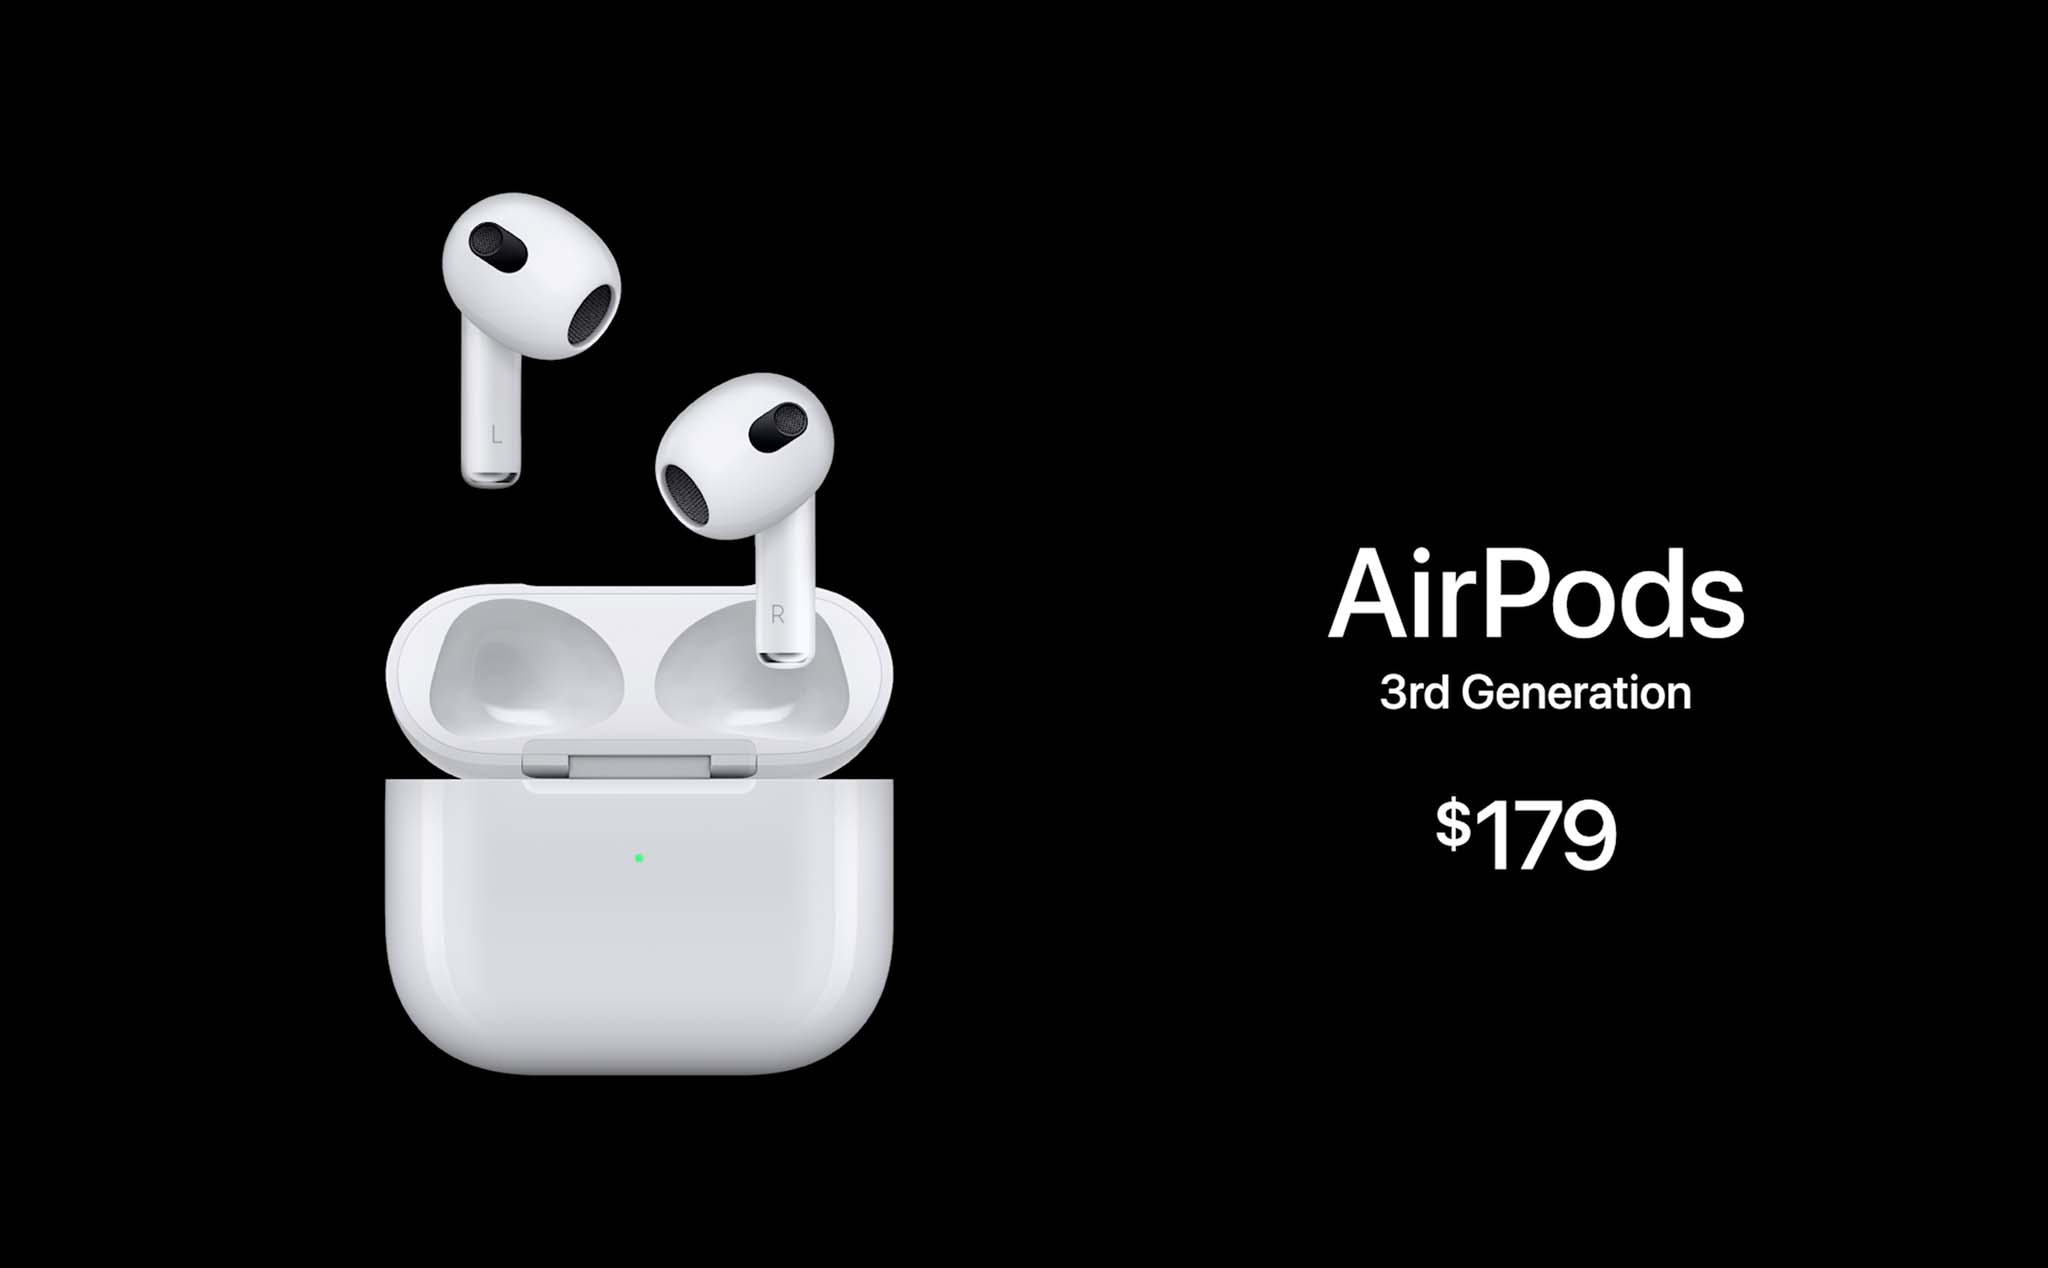 Apple AirPods thế hệ thứ 3: thiết kế mới, hỗ trợ Adaptive EQ, giá 179 đô